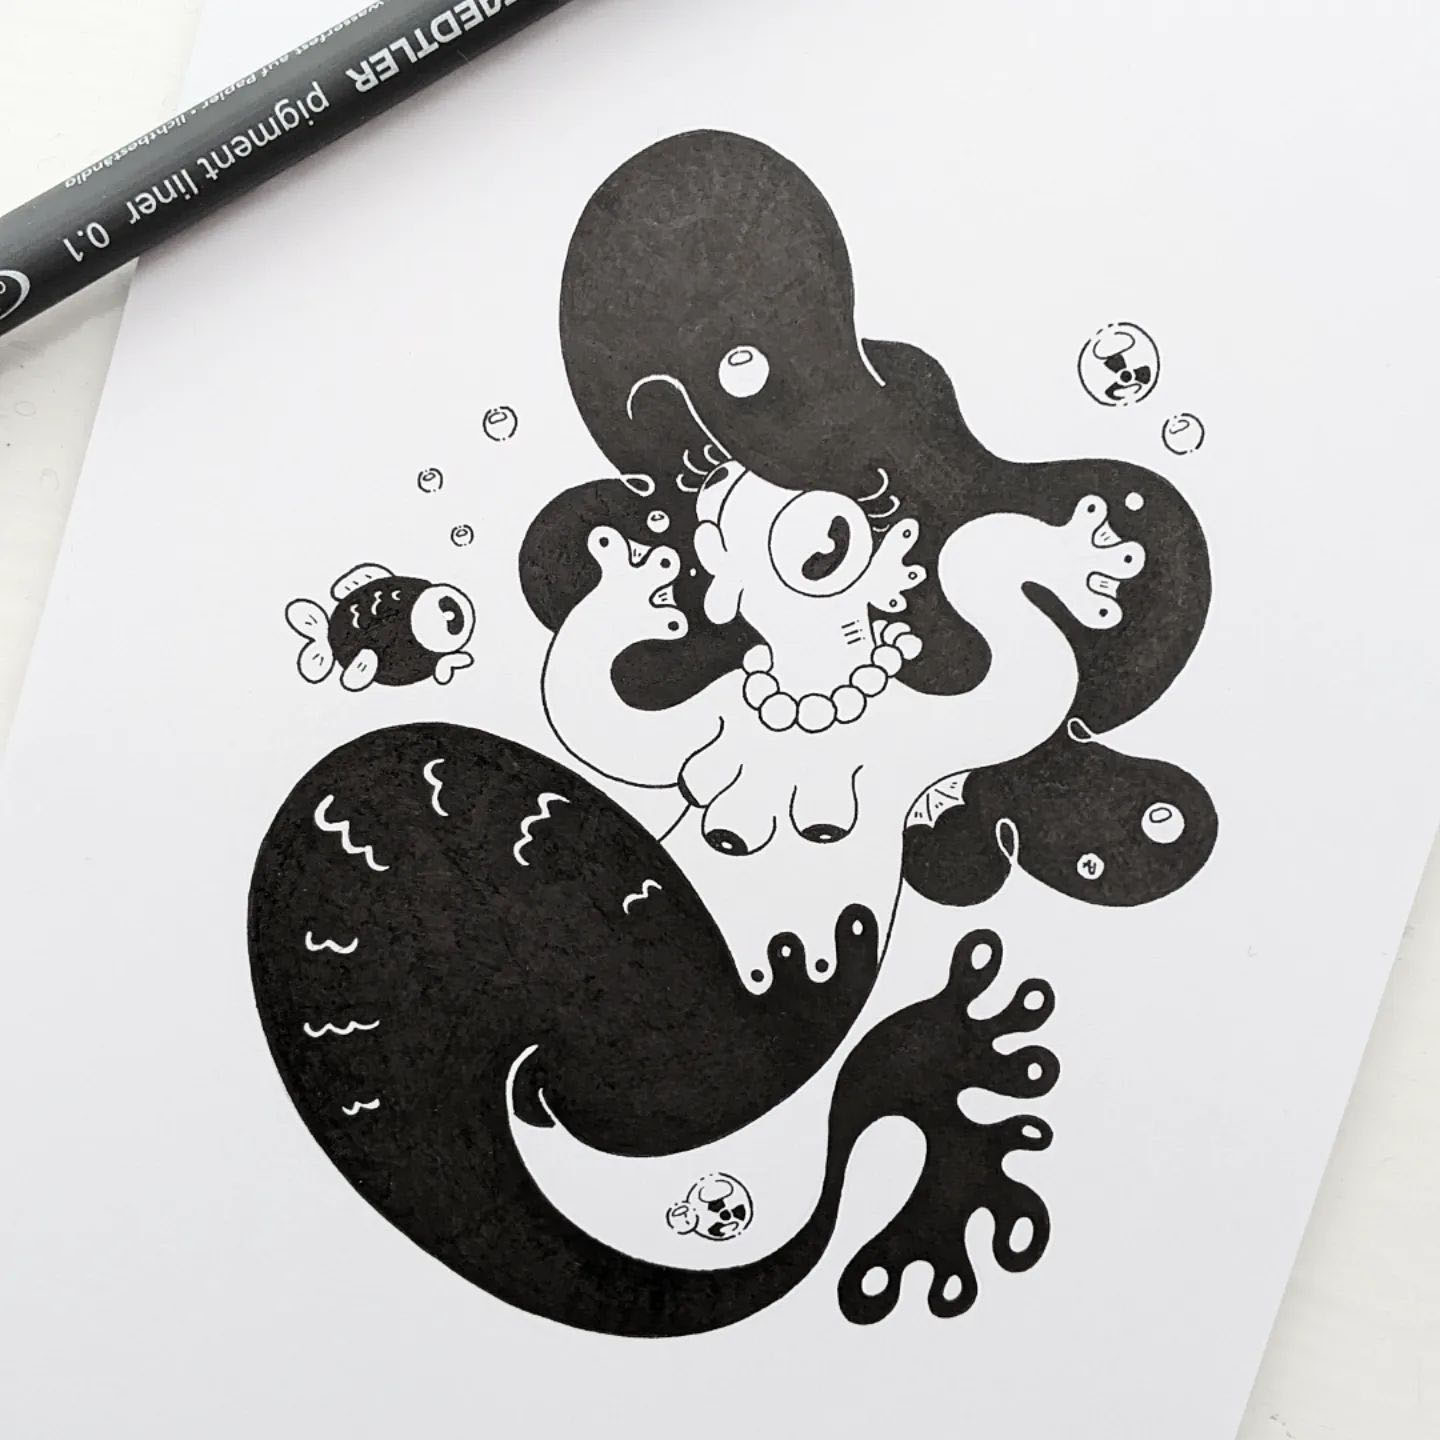 Inked illustration of a mutant mermaid